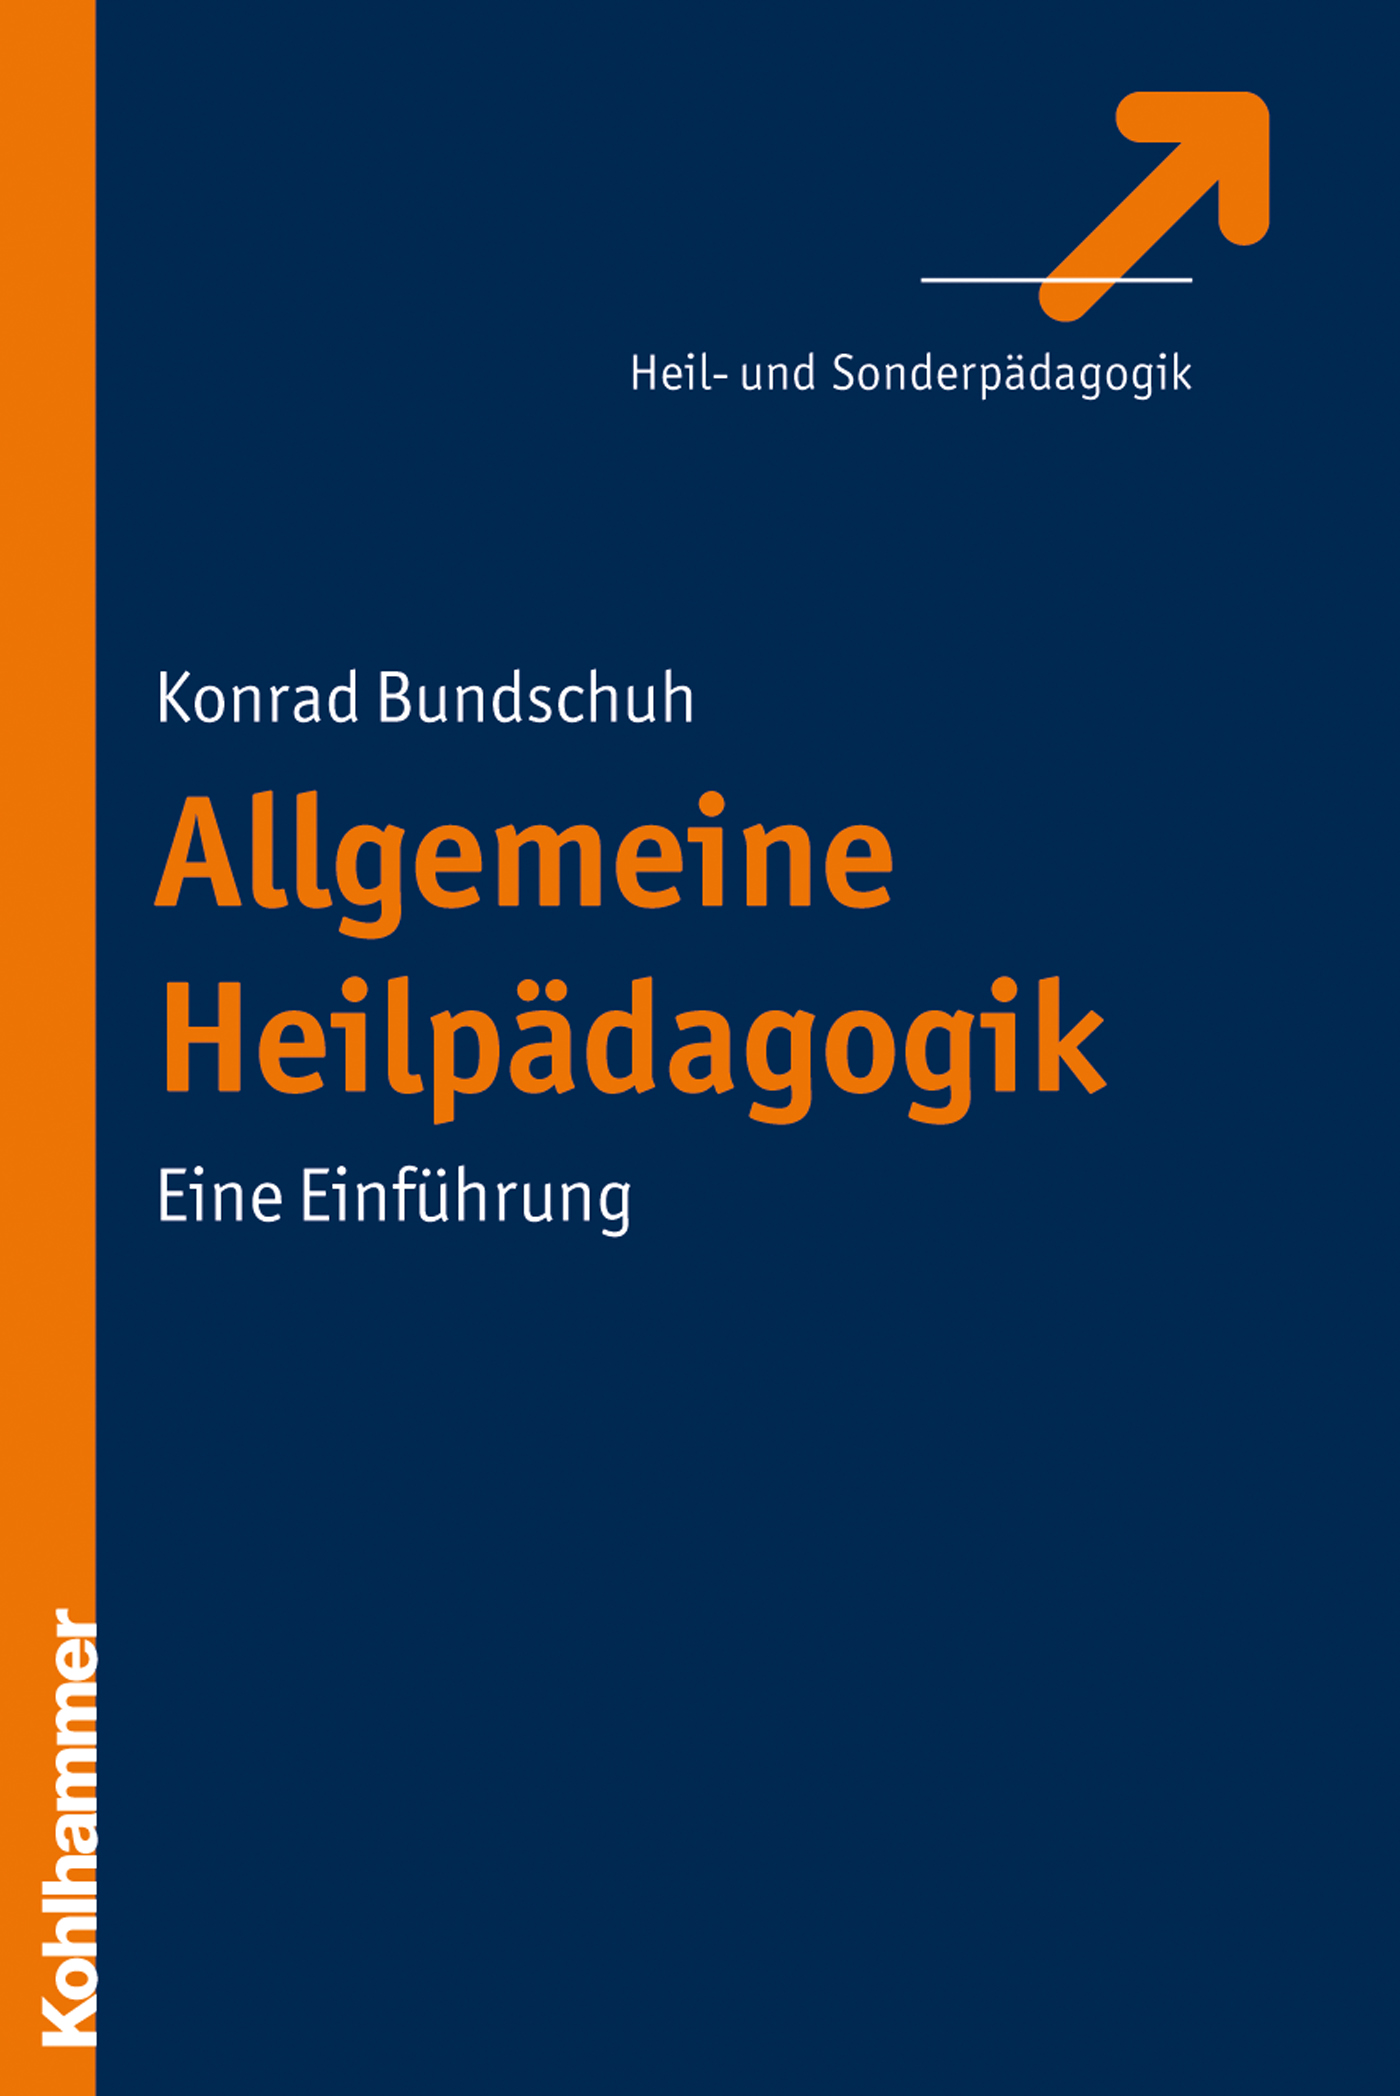 Konrad Bundschuh Allgemeine Heilpädagogik